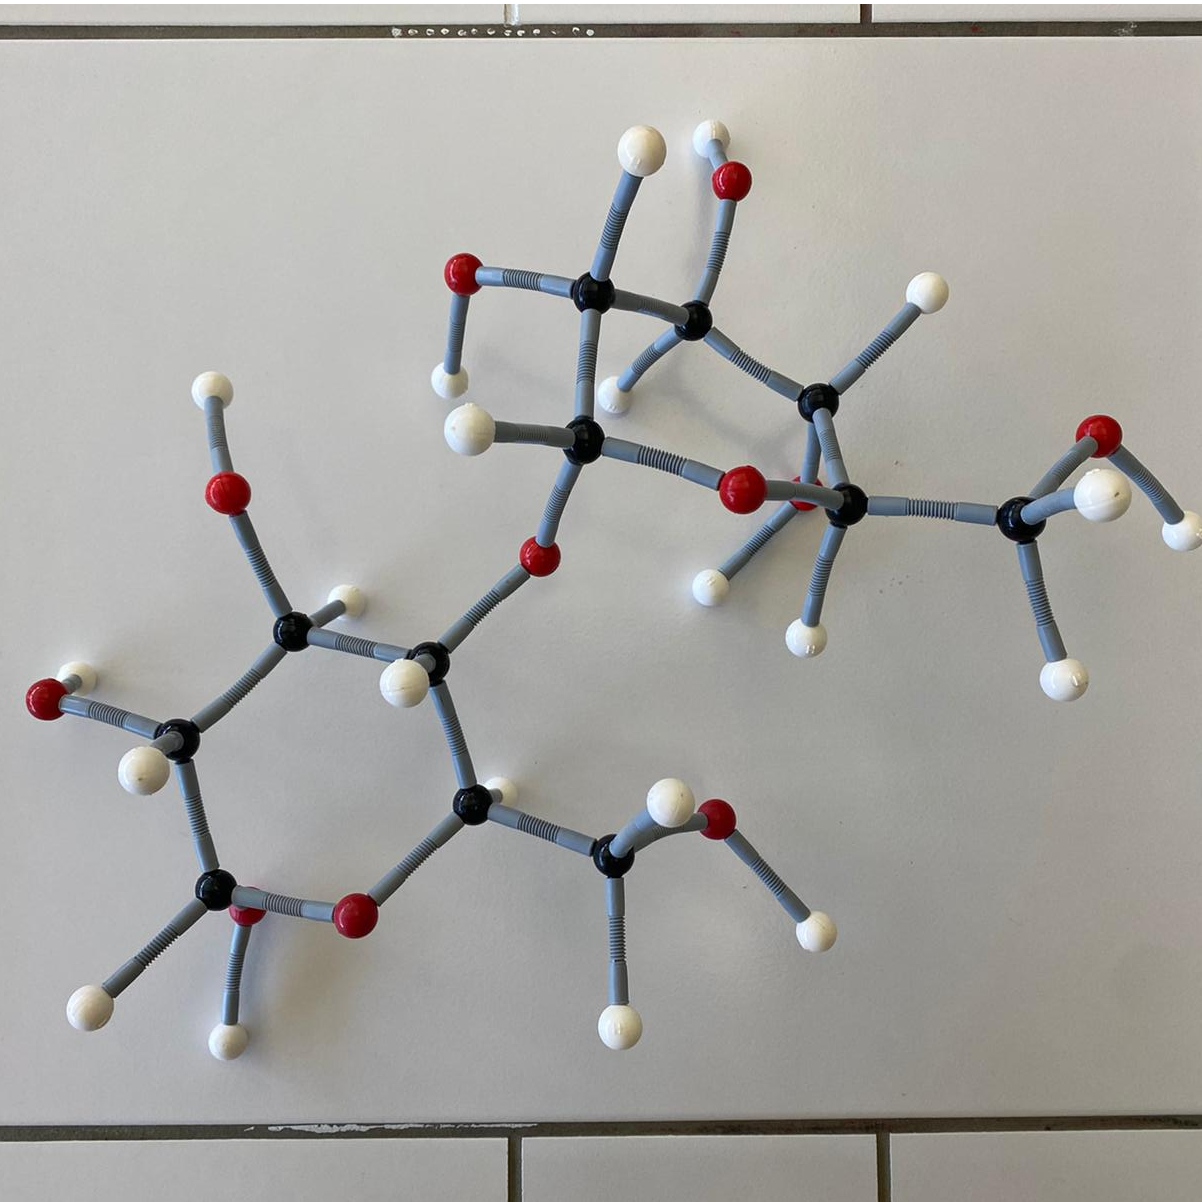 Bild aus dem Chemischen Fotokalender: Zusammengestecktes Modell eines Moleküls